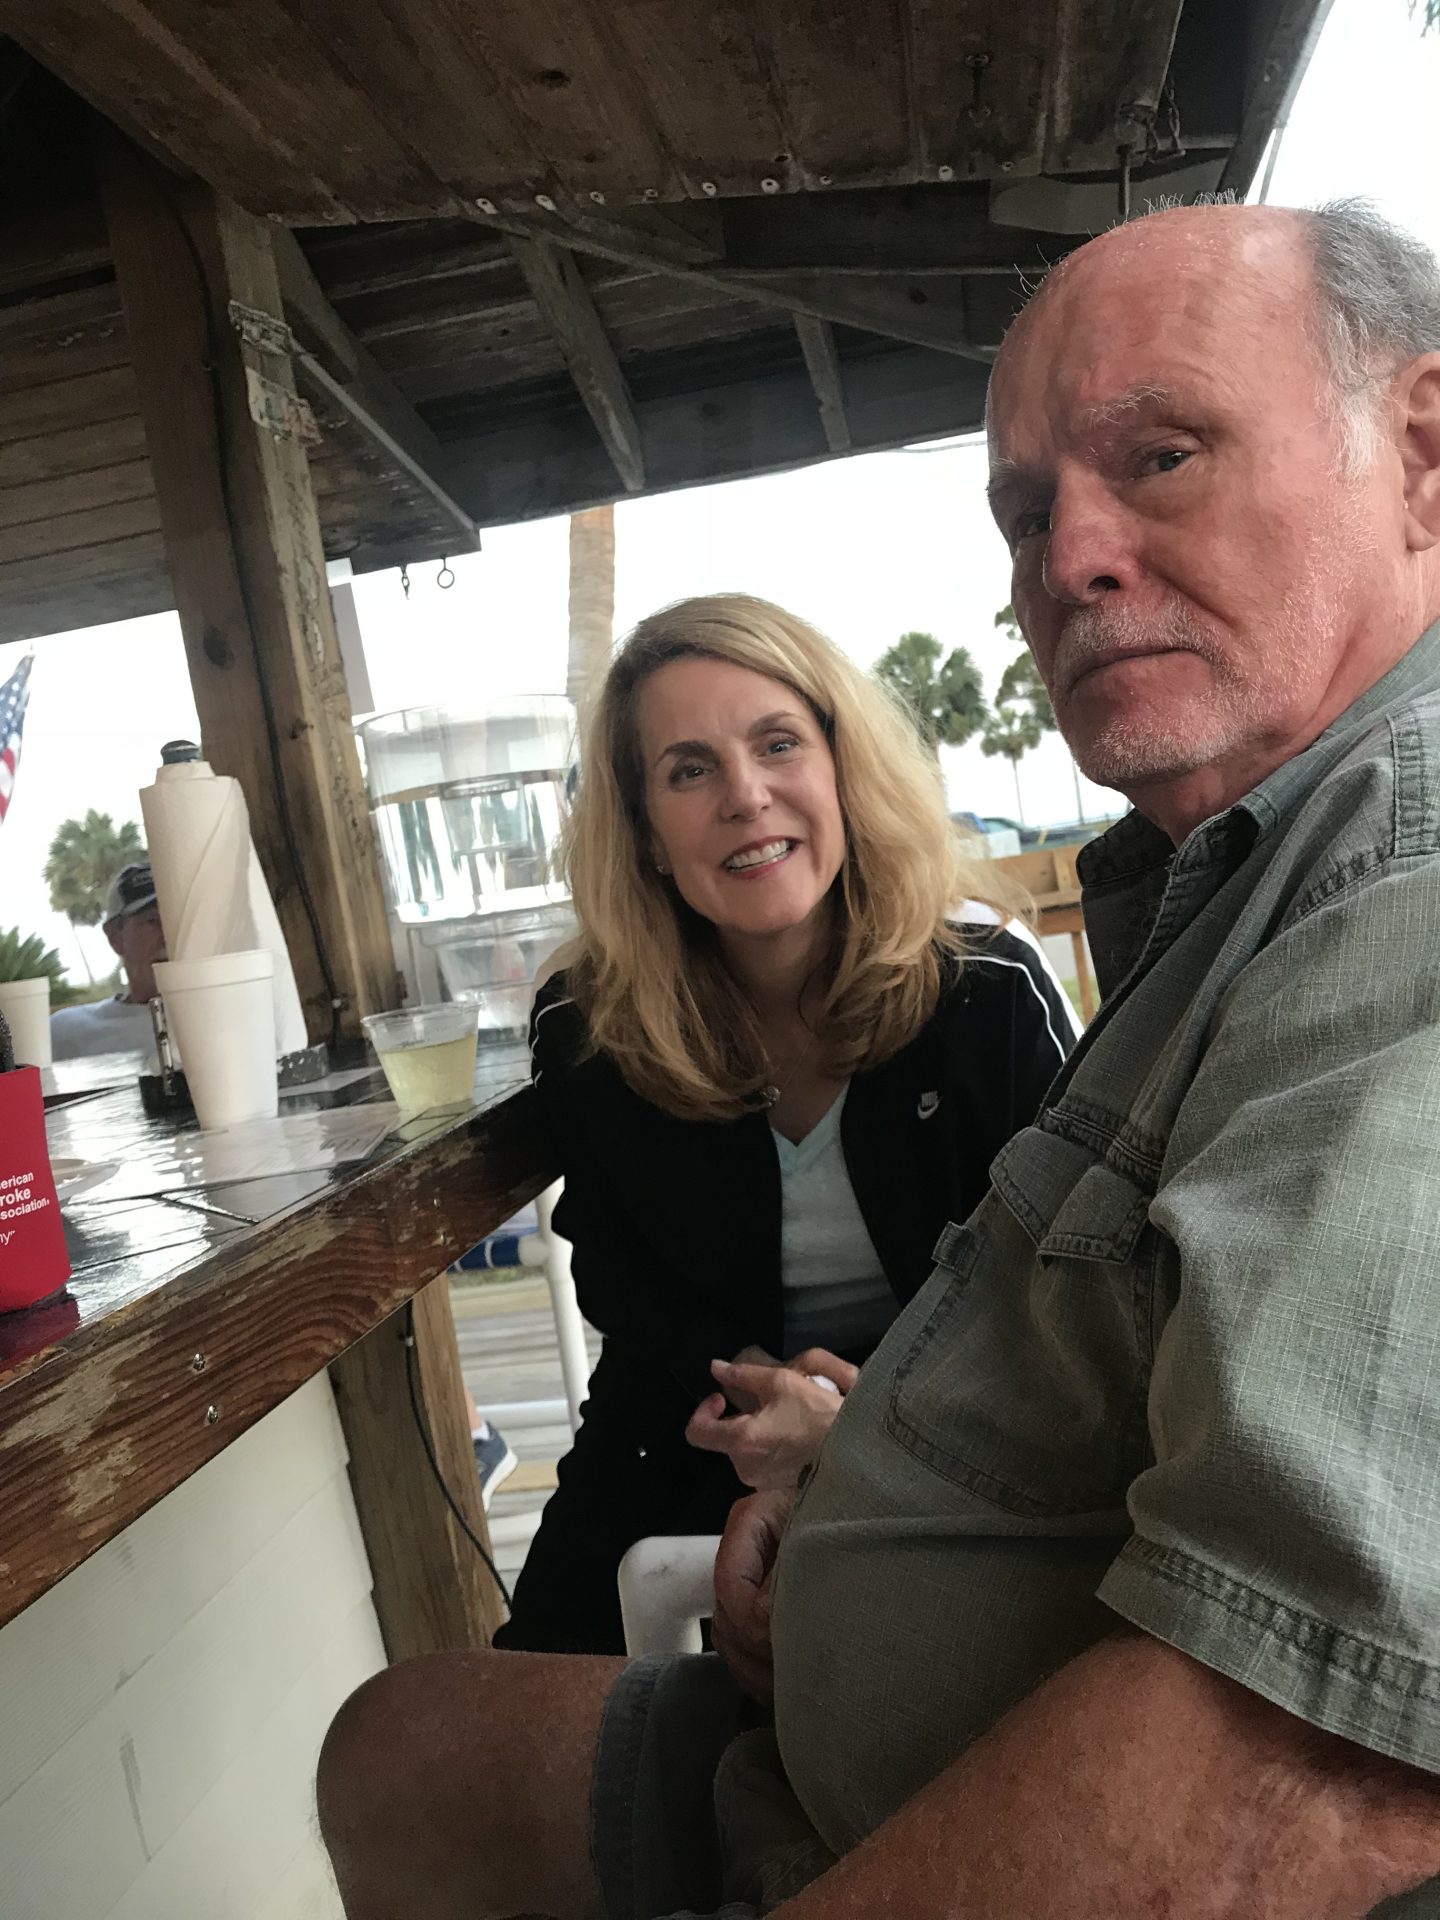 Joe & Debbie at the Tiki Bar